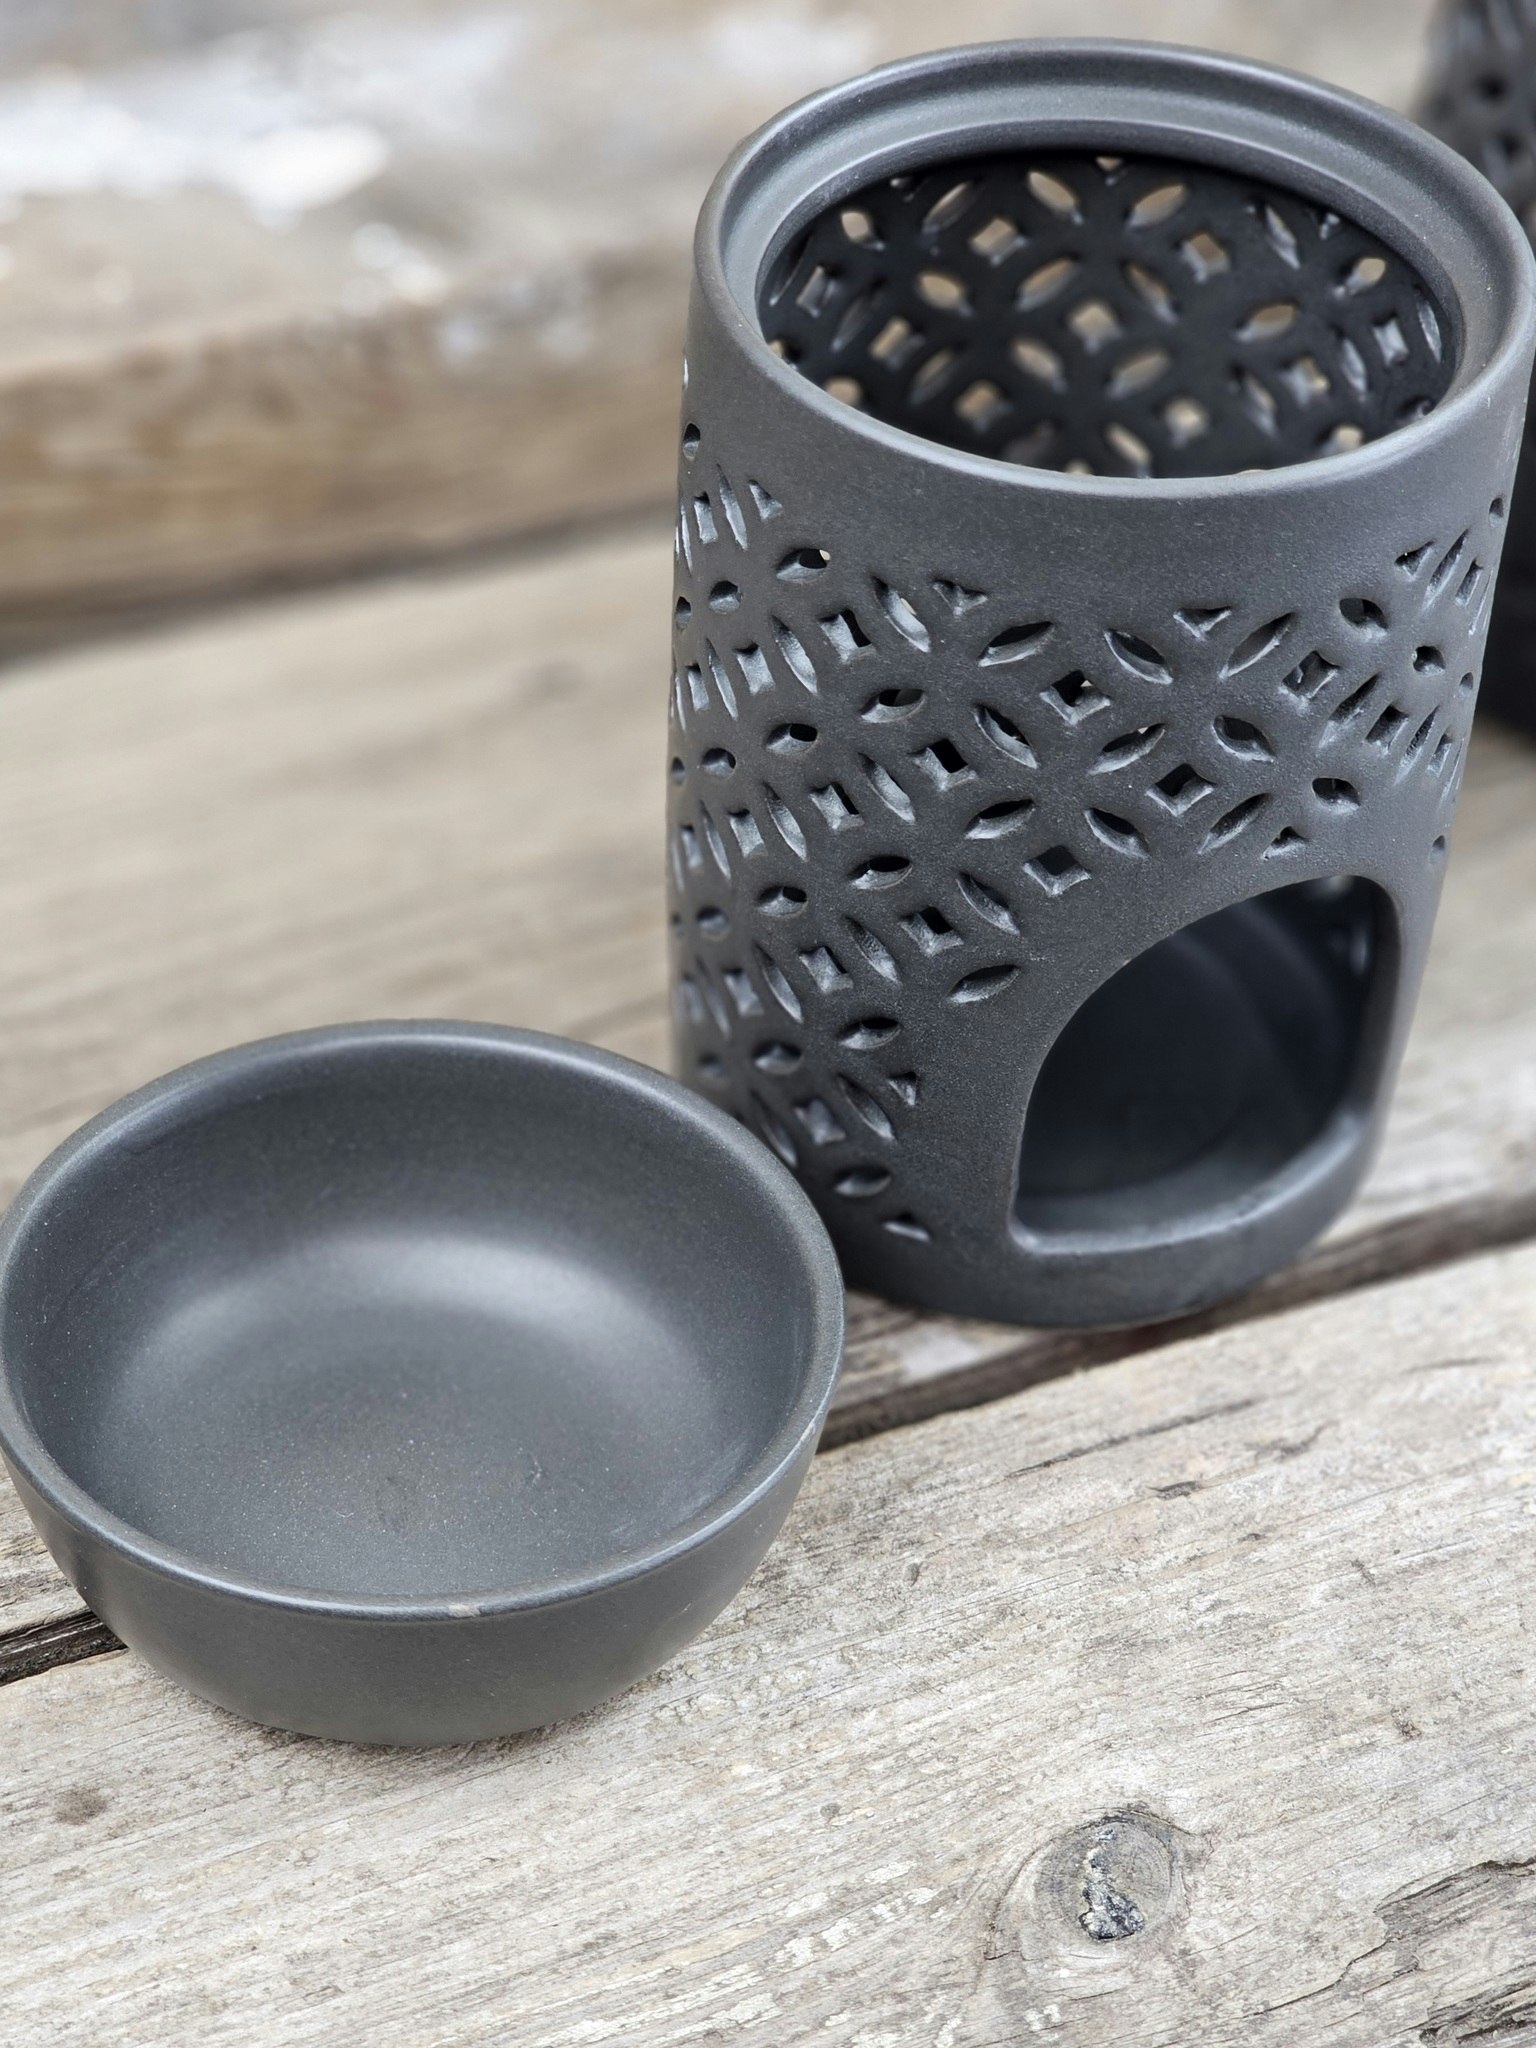 Oljebrännare, Aroma diffuser svart keramik med mönster